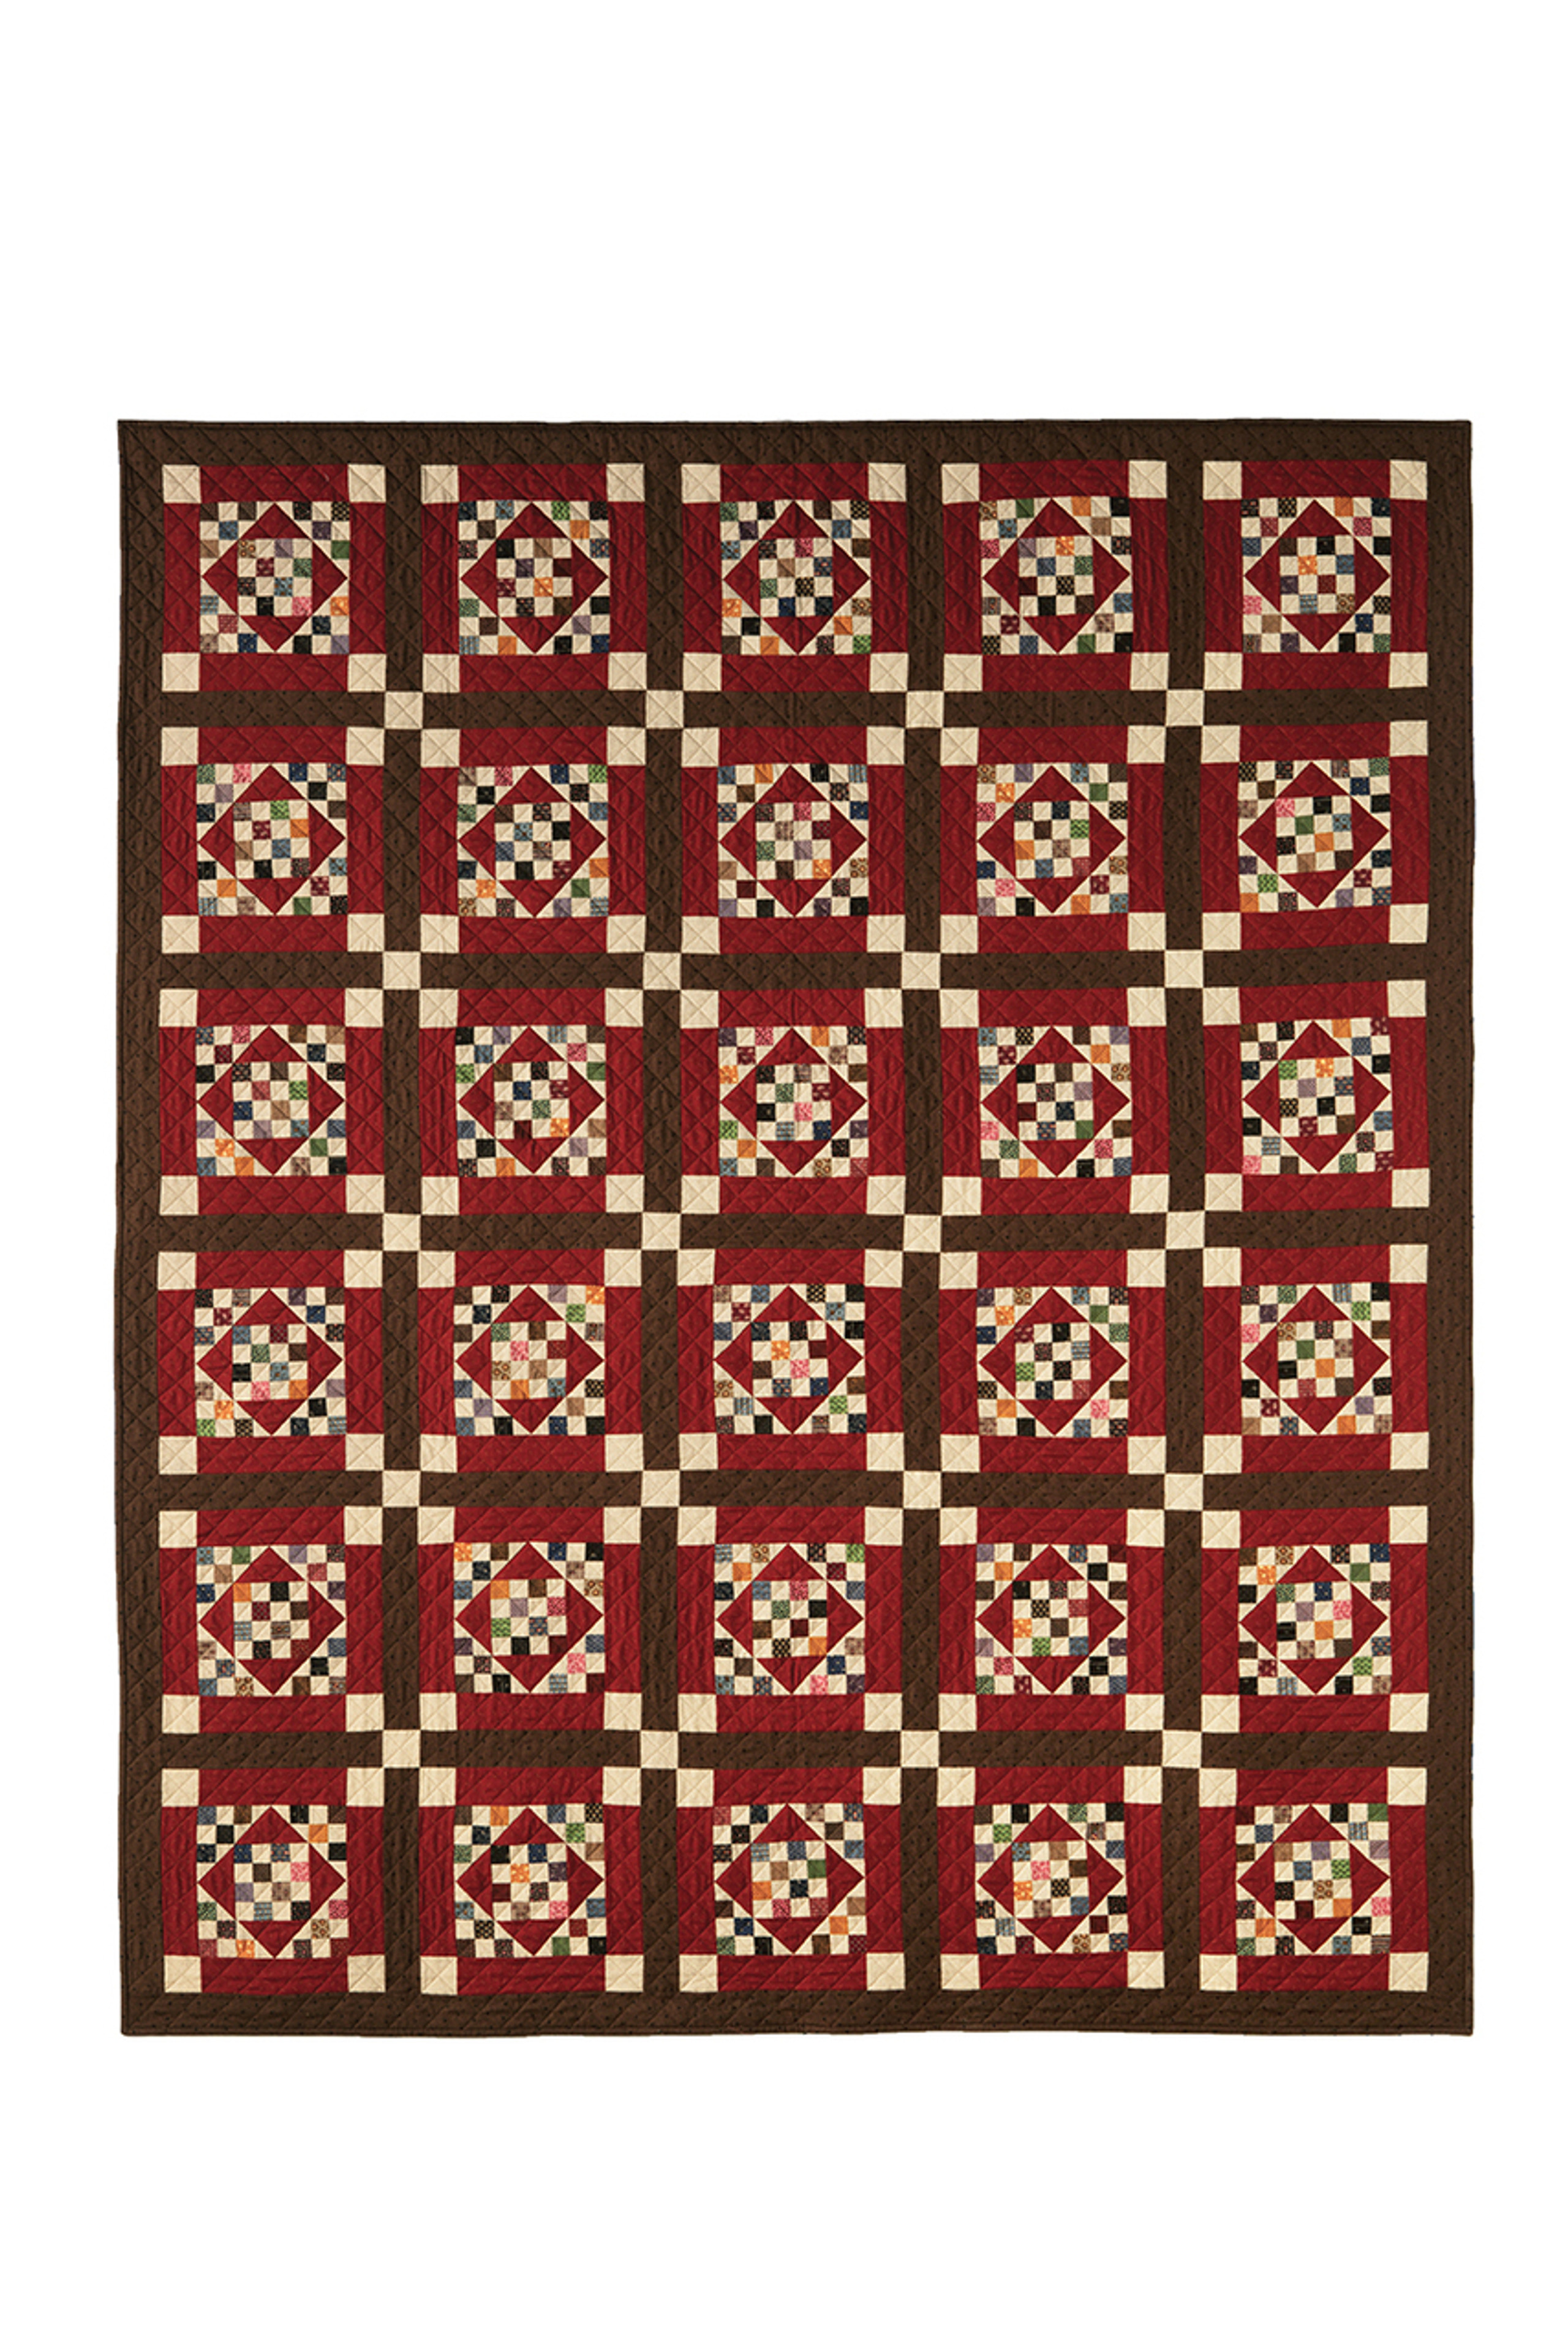 Square Dance Quilt Pattern by Julie Hendricksen of JJ Stitches